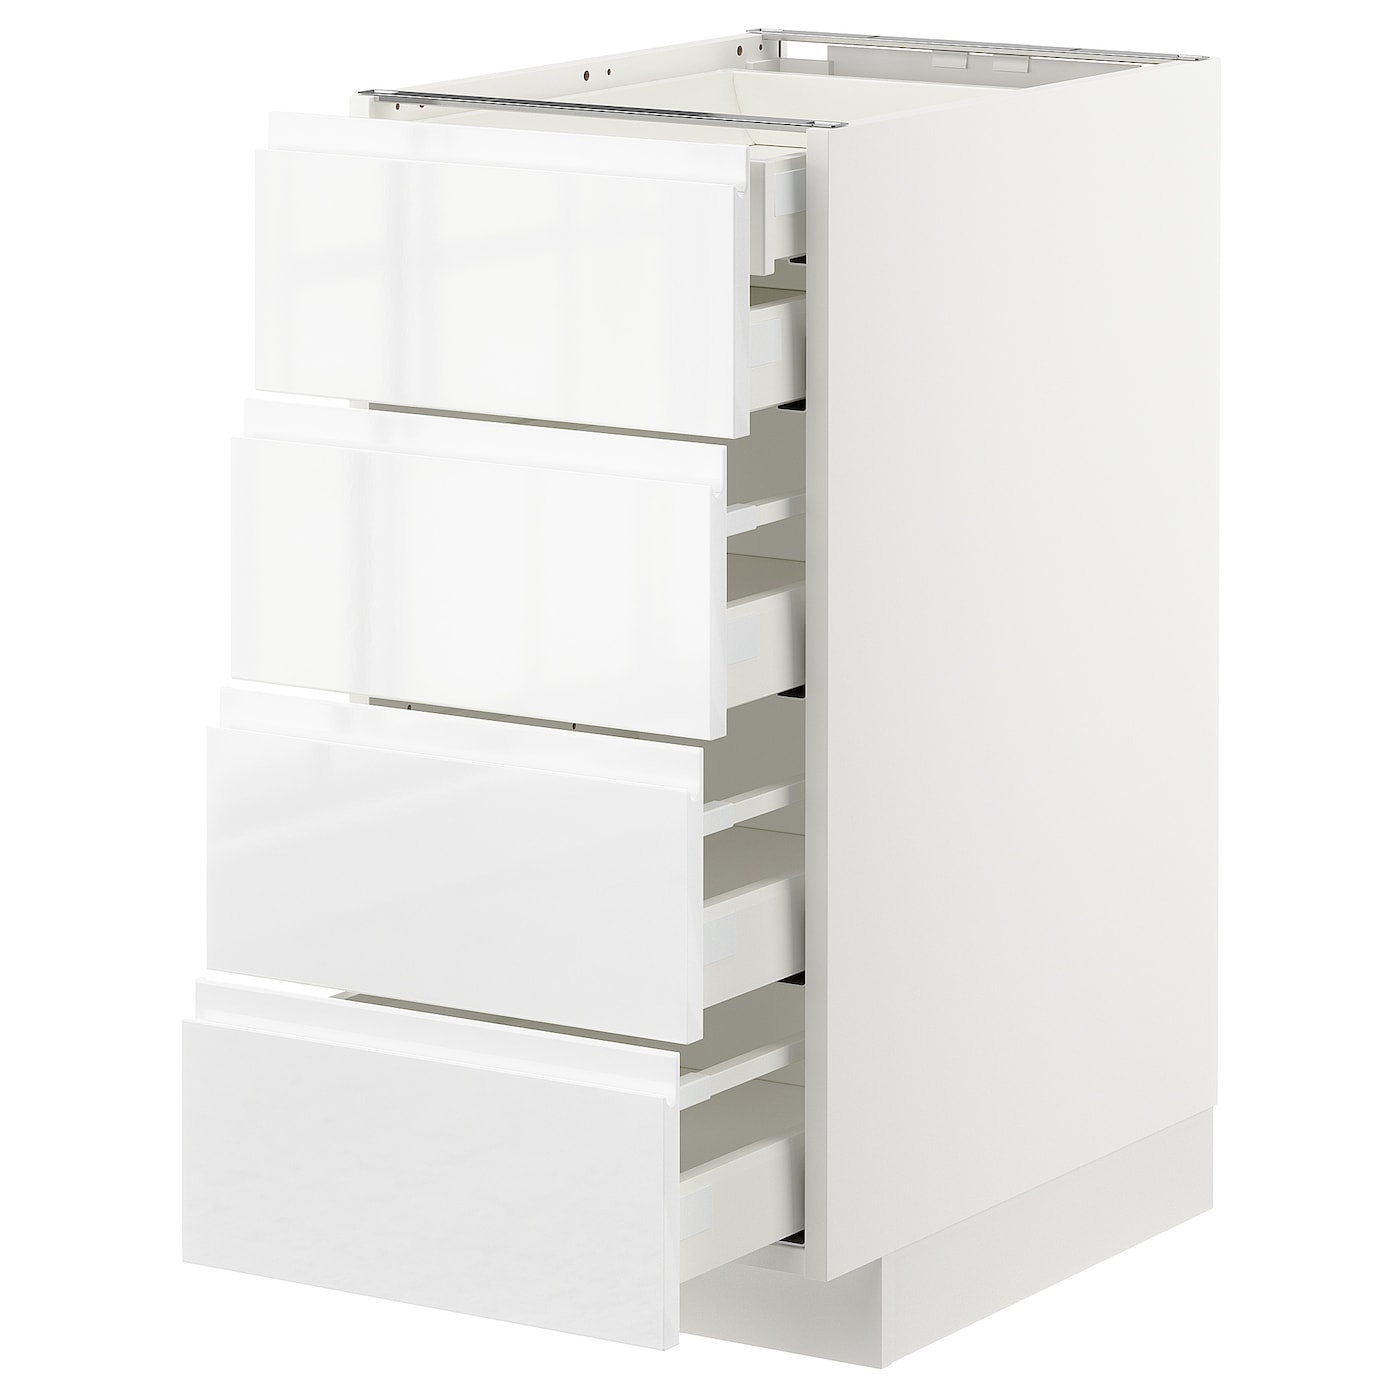 Напольный кухонный шкаф  - IKEA METOD MAXIMERA, 88x62x40см, белый, МЕТОД МАКСИМЕРА ИКЕА